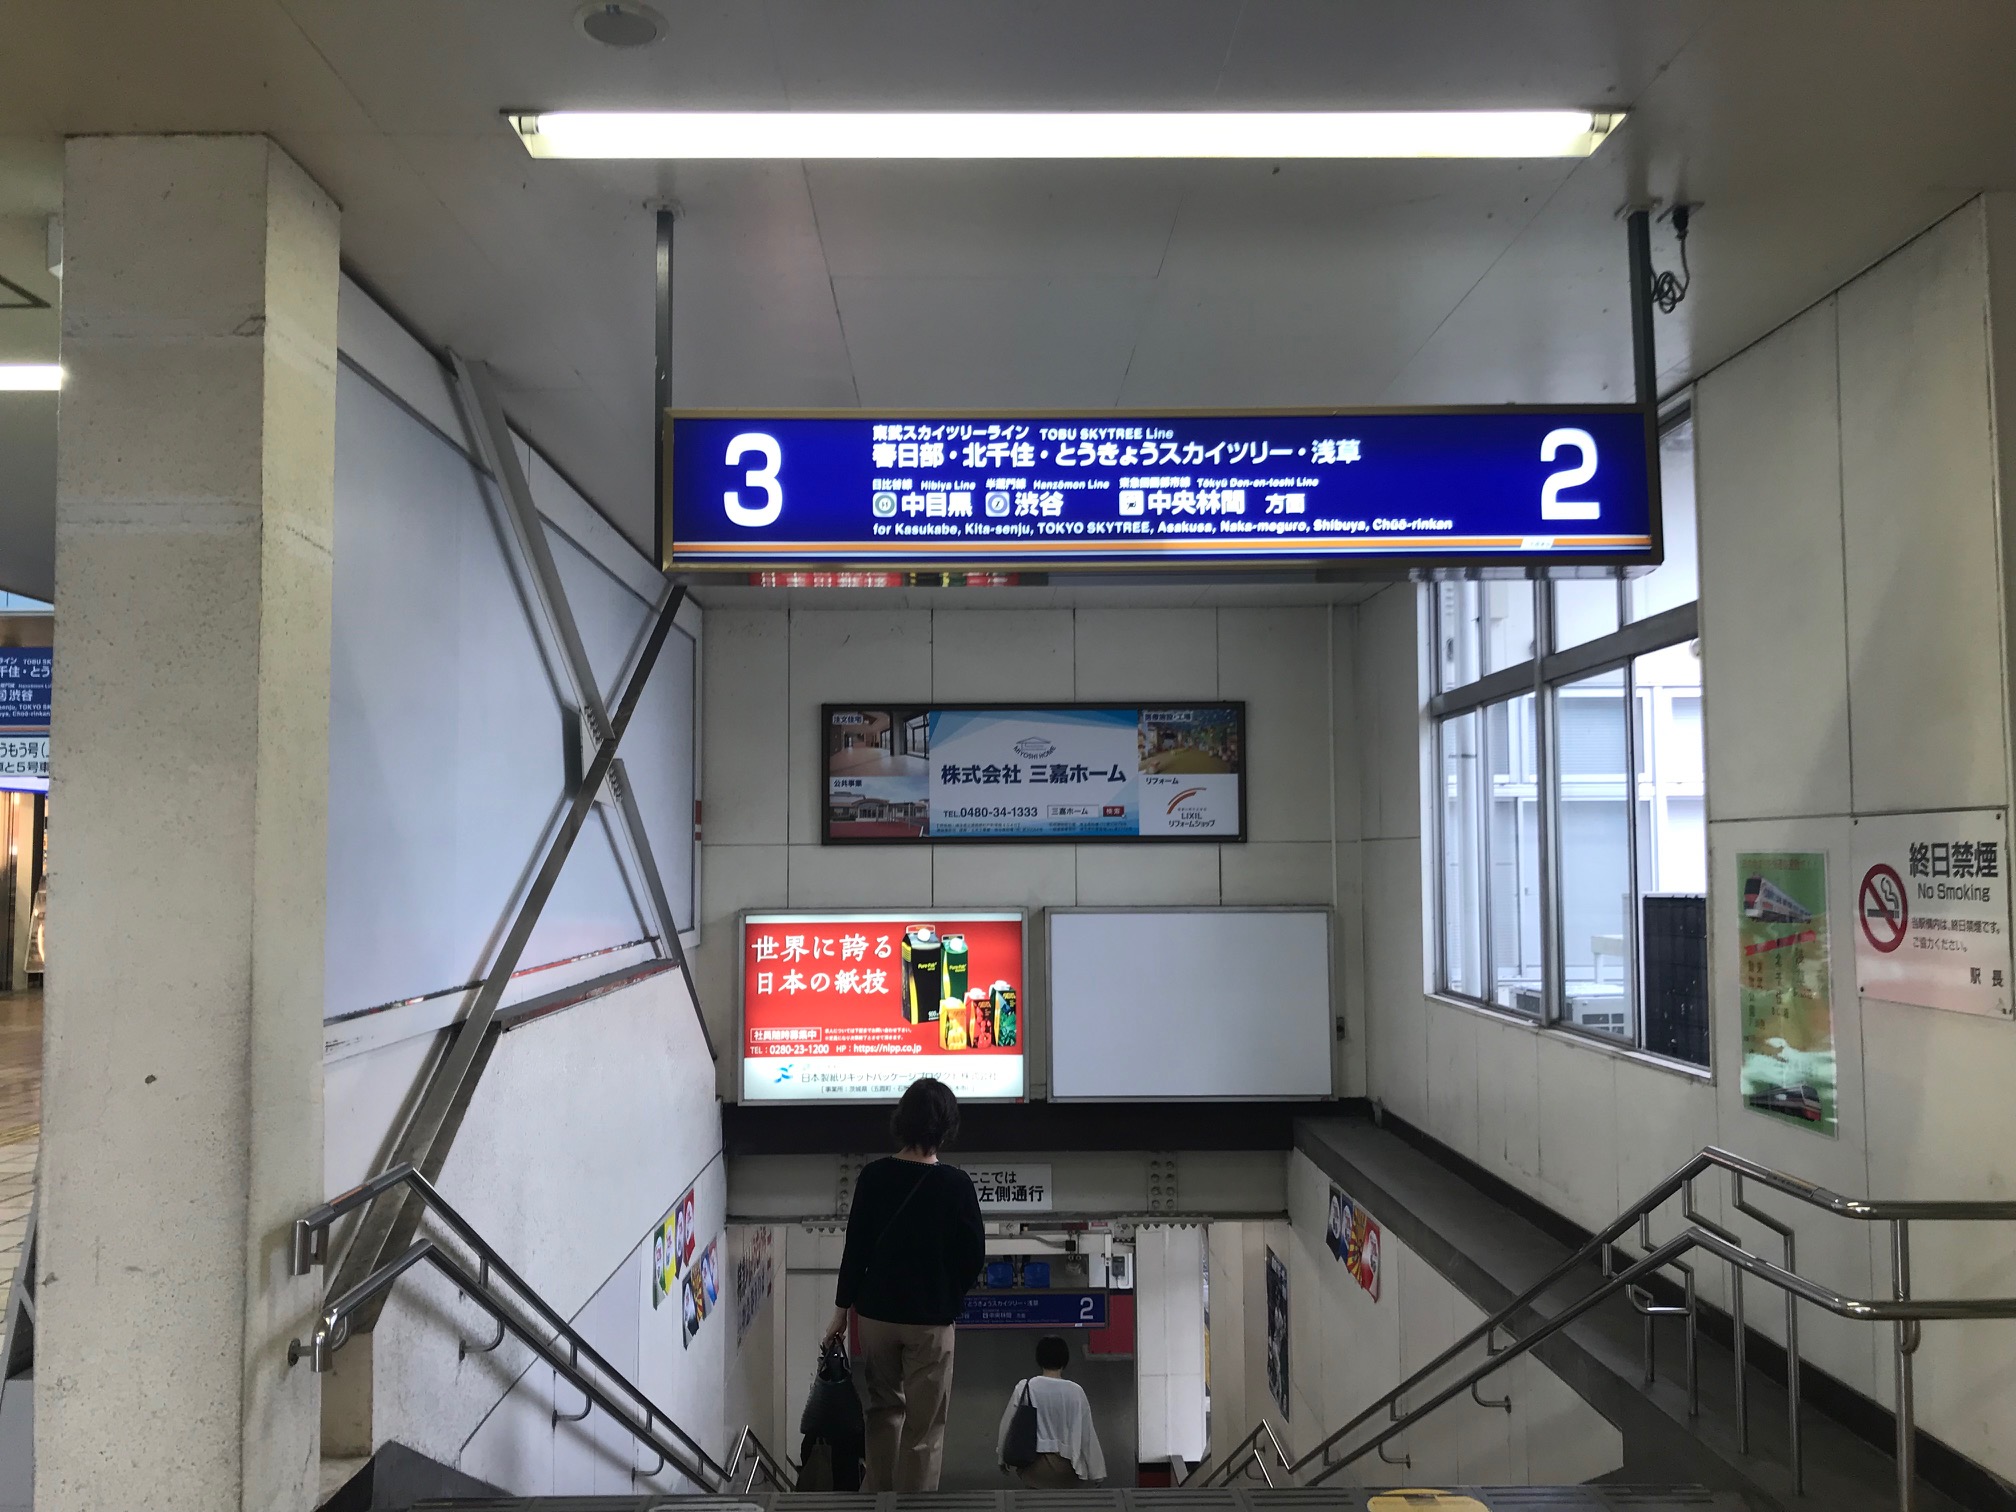 三嘉ホーム 東武動物公園駅にて看板掲載 株式会社三嘉ホーム